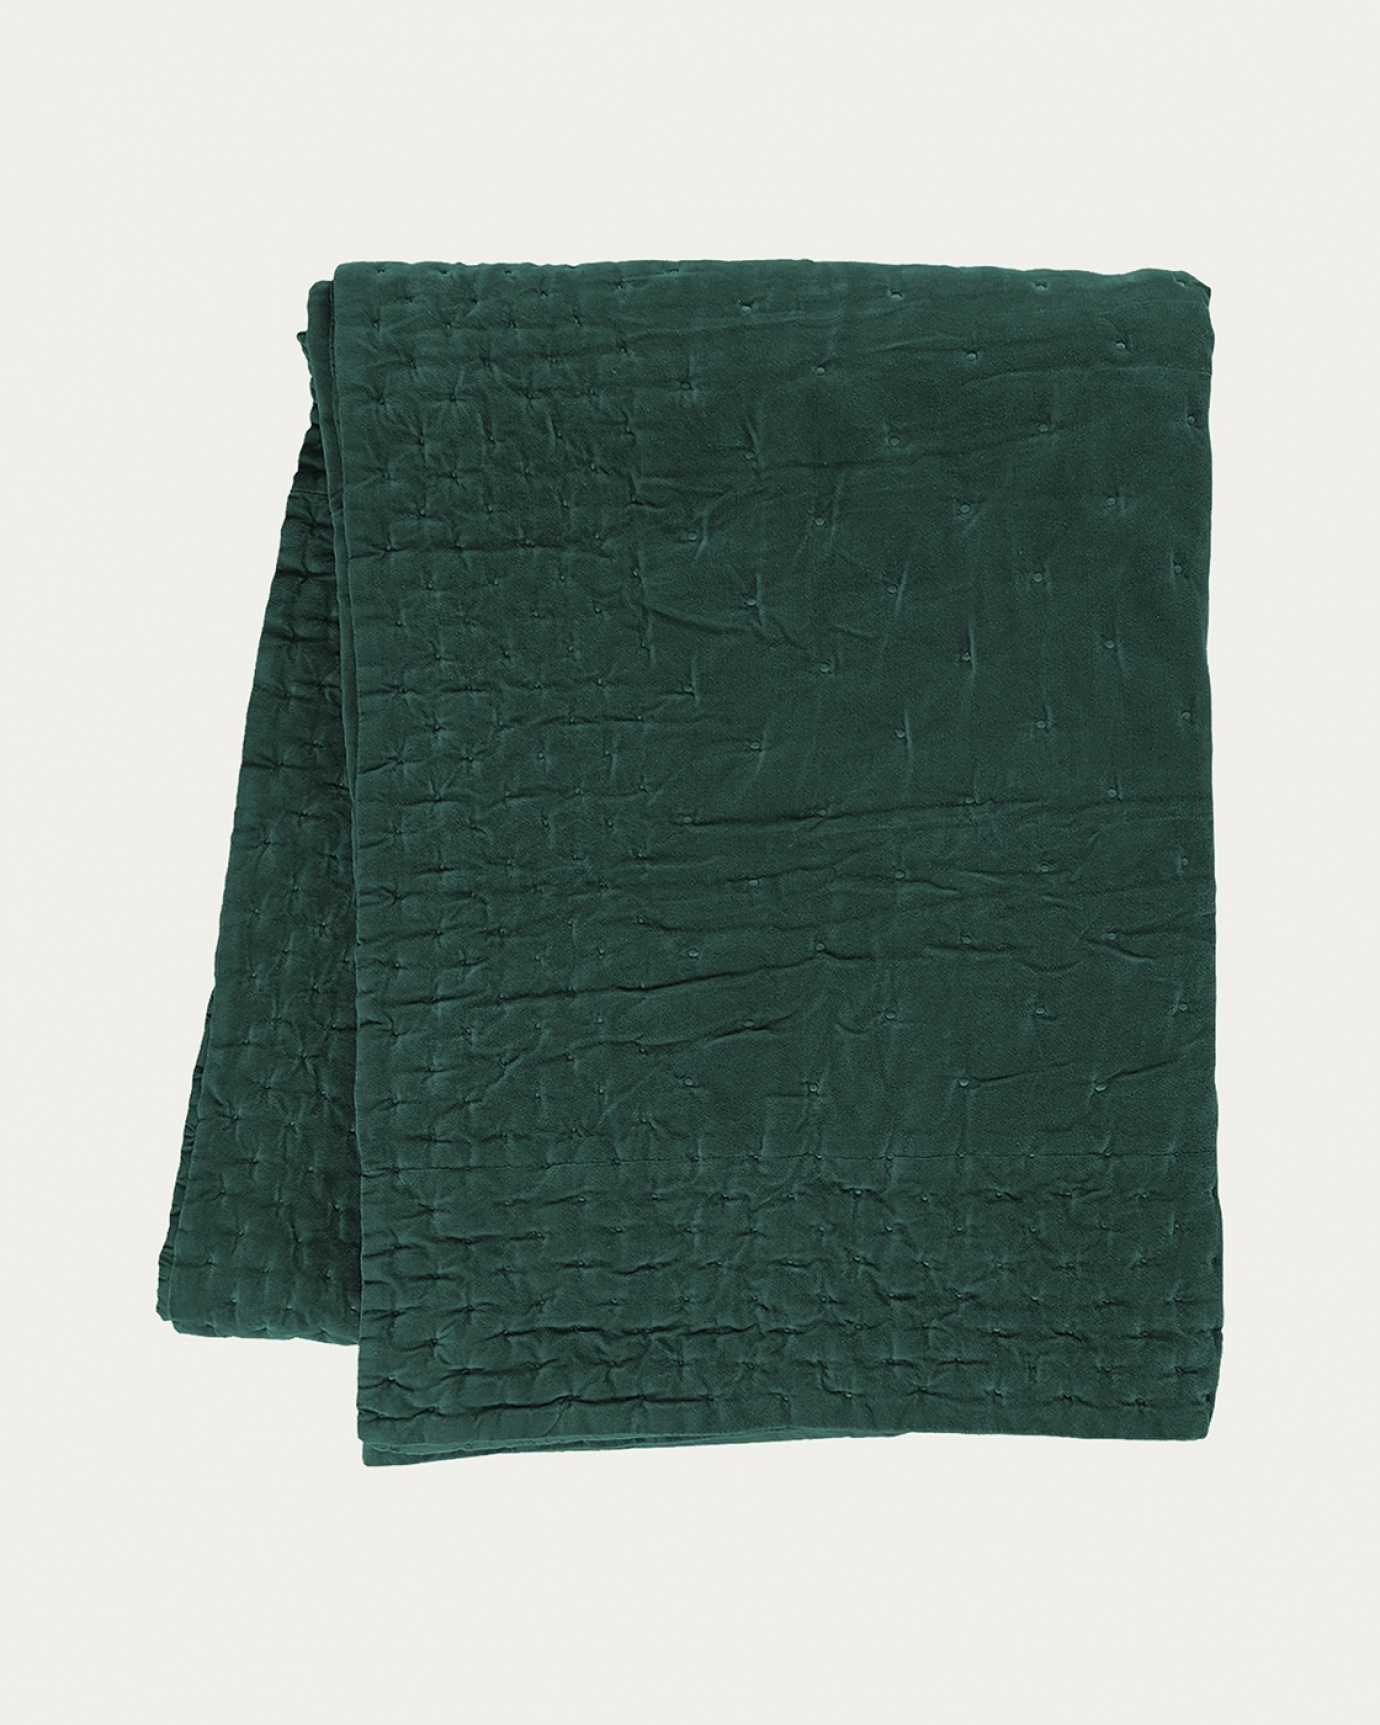 Produktbild tief smaragdgrün Tagesdecke PAOLO aus weichem Baumwollsamt für Doppelbett von LINUM DESIGN. Größe 270x260 cm.